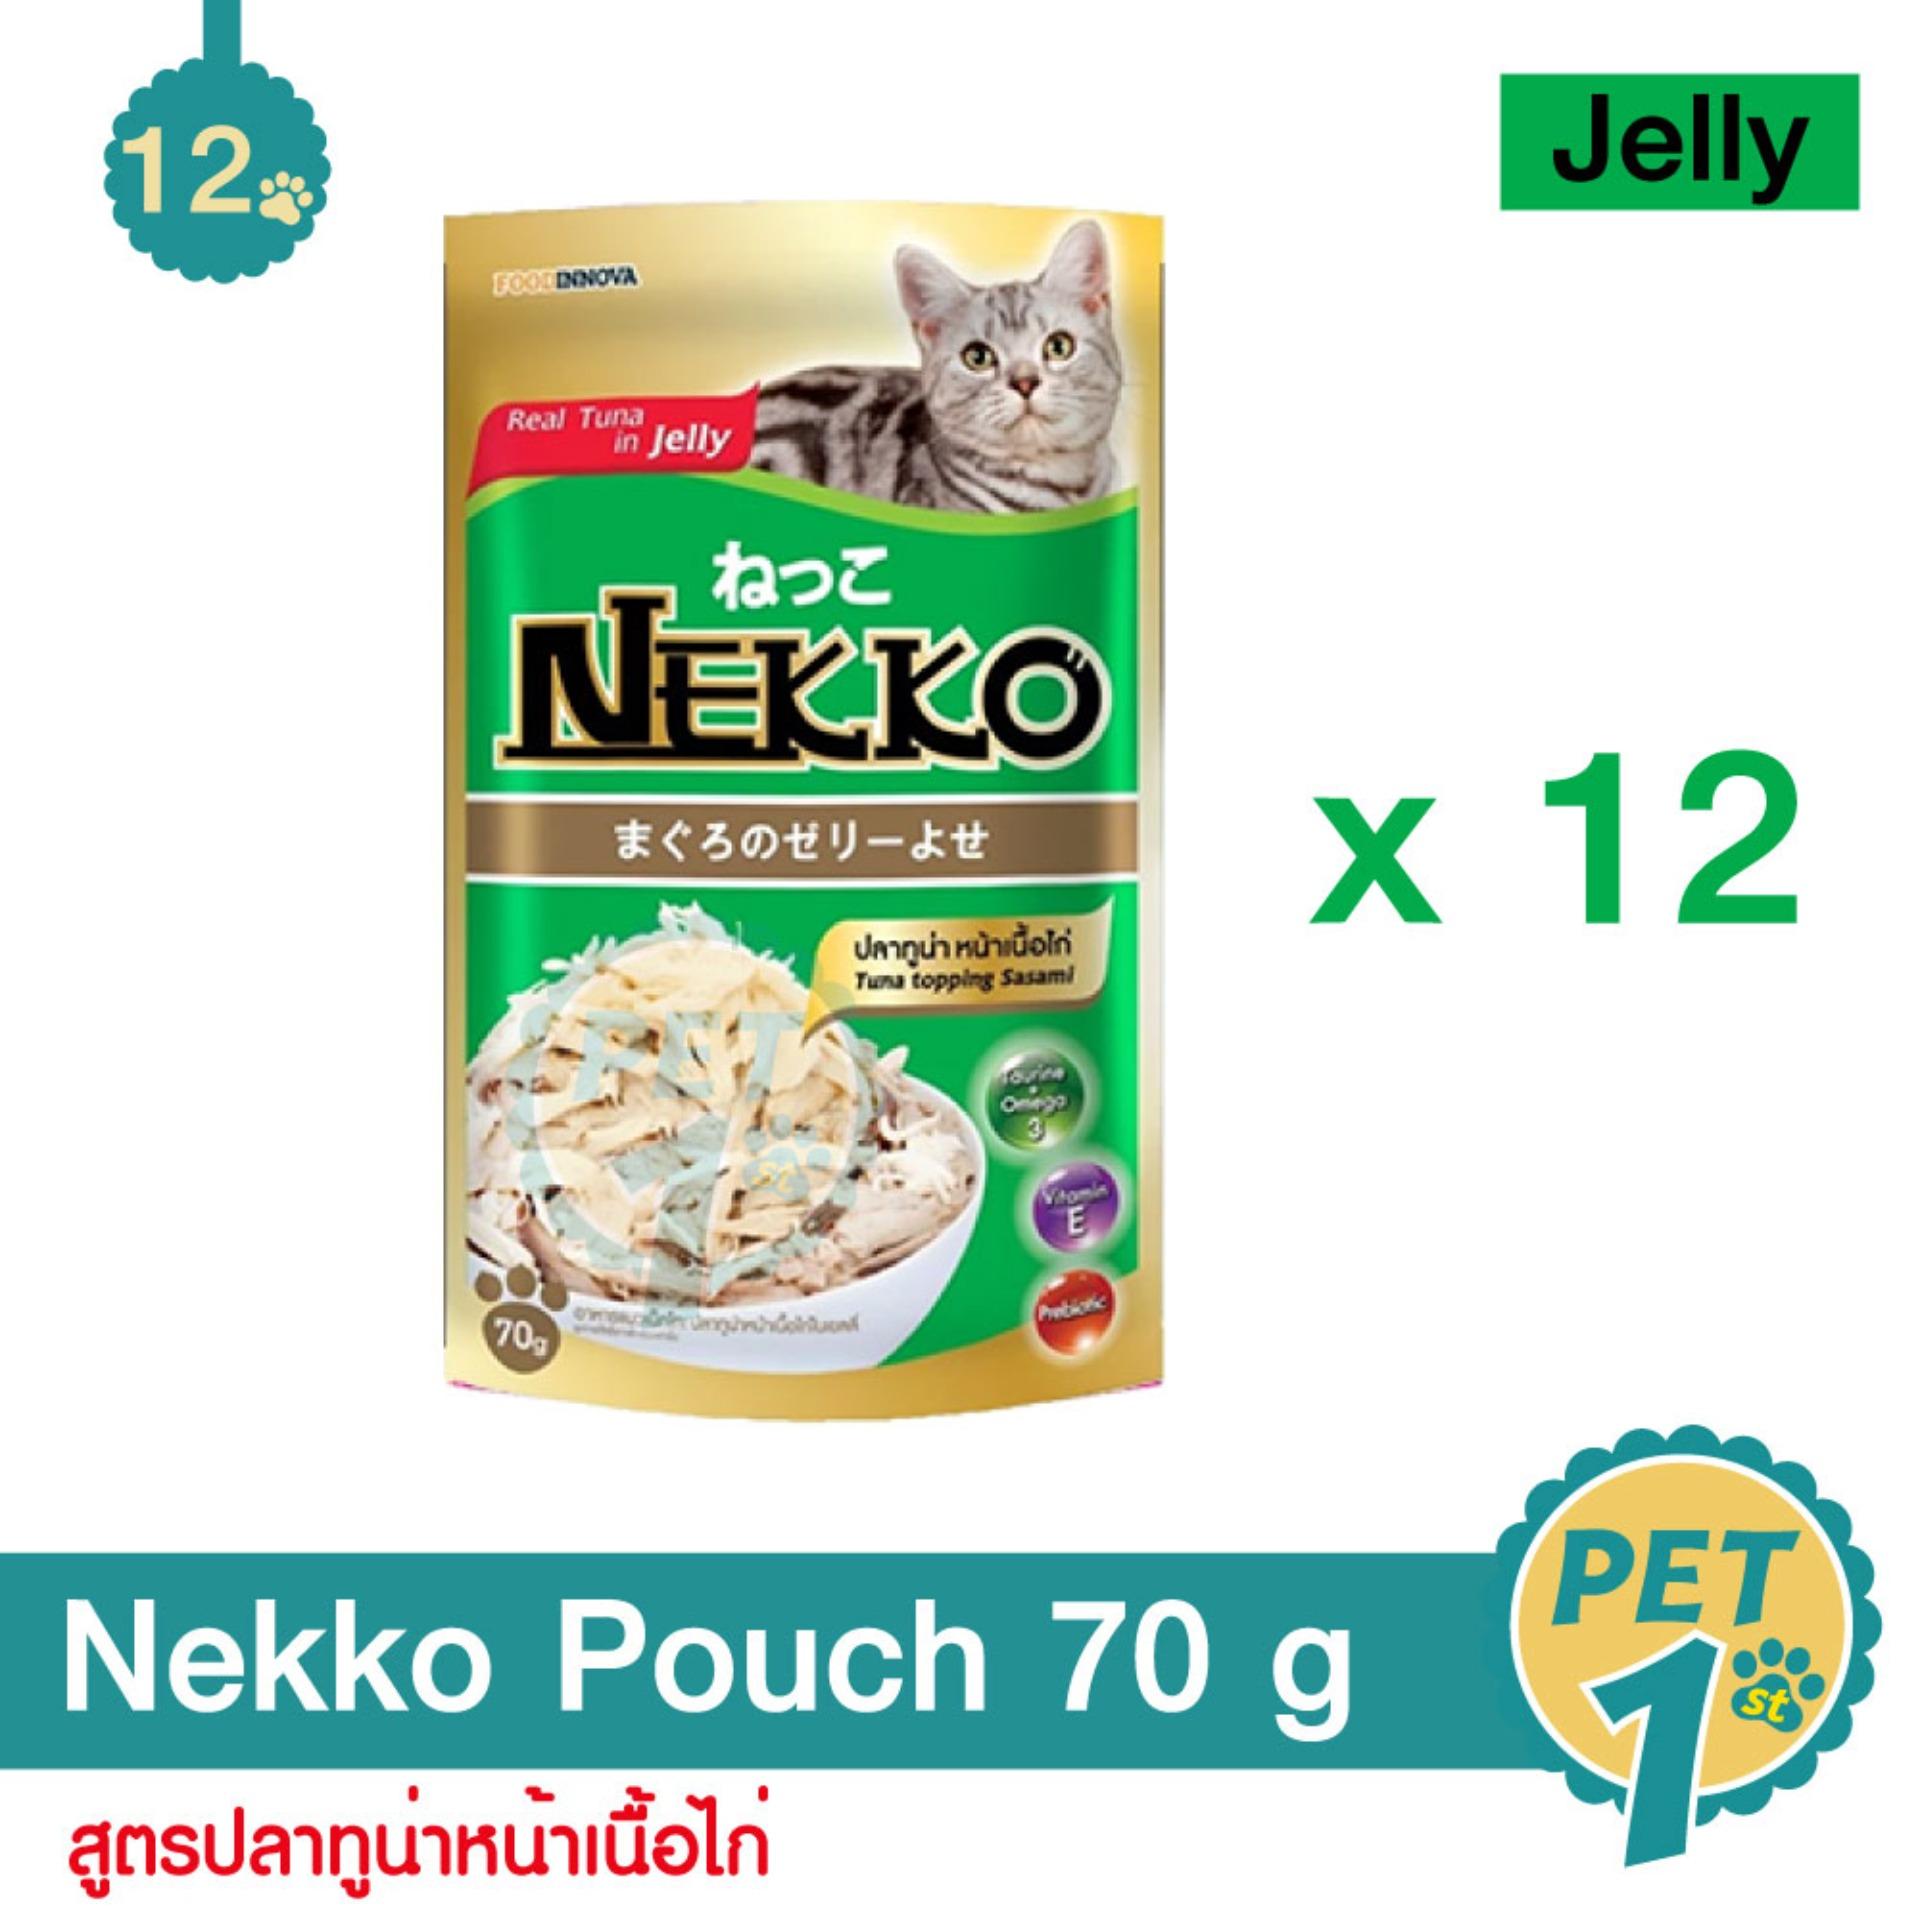 Nekko Pouch 70 g x 12 Units อาหารเปียกแมว สูตรปลาทูน่า หน้าเนื้อไก่ 12 ซอง